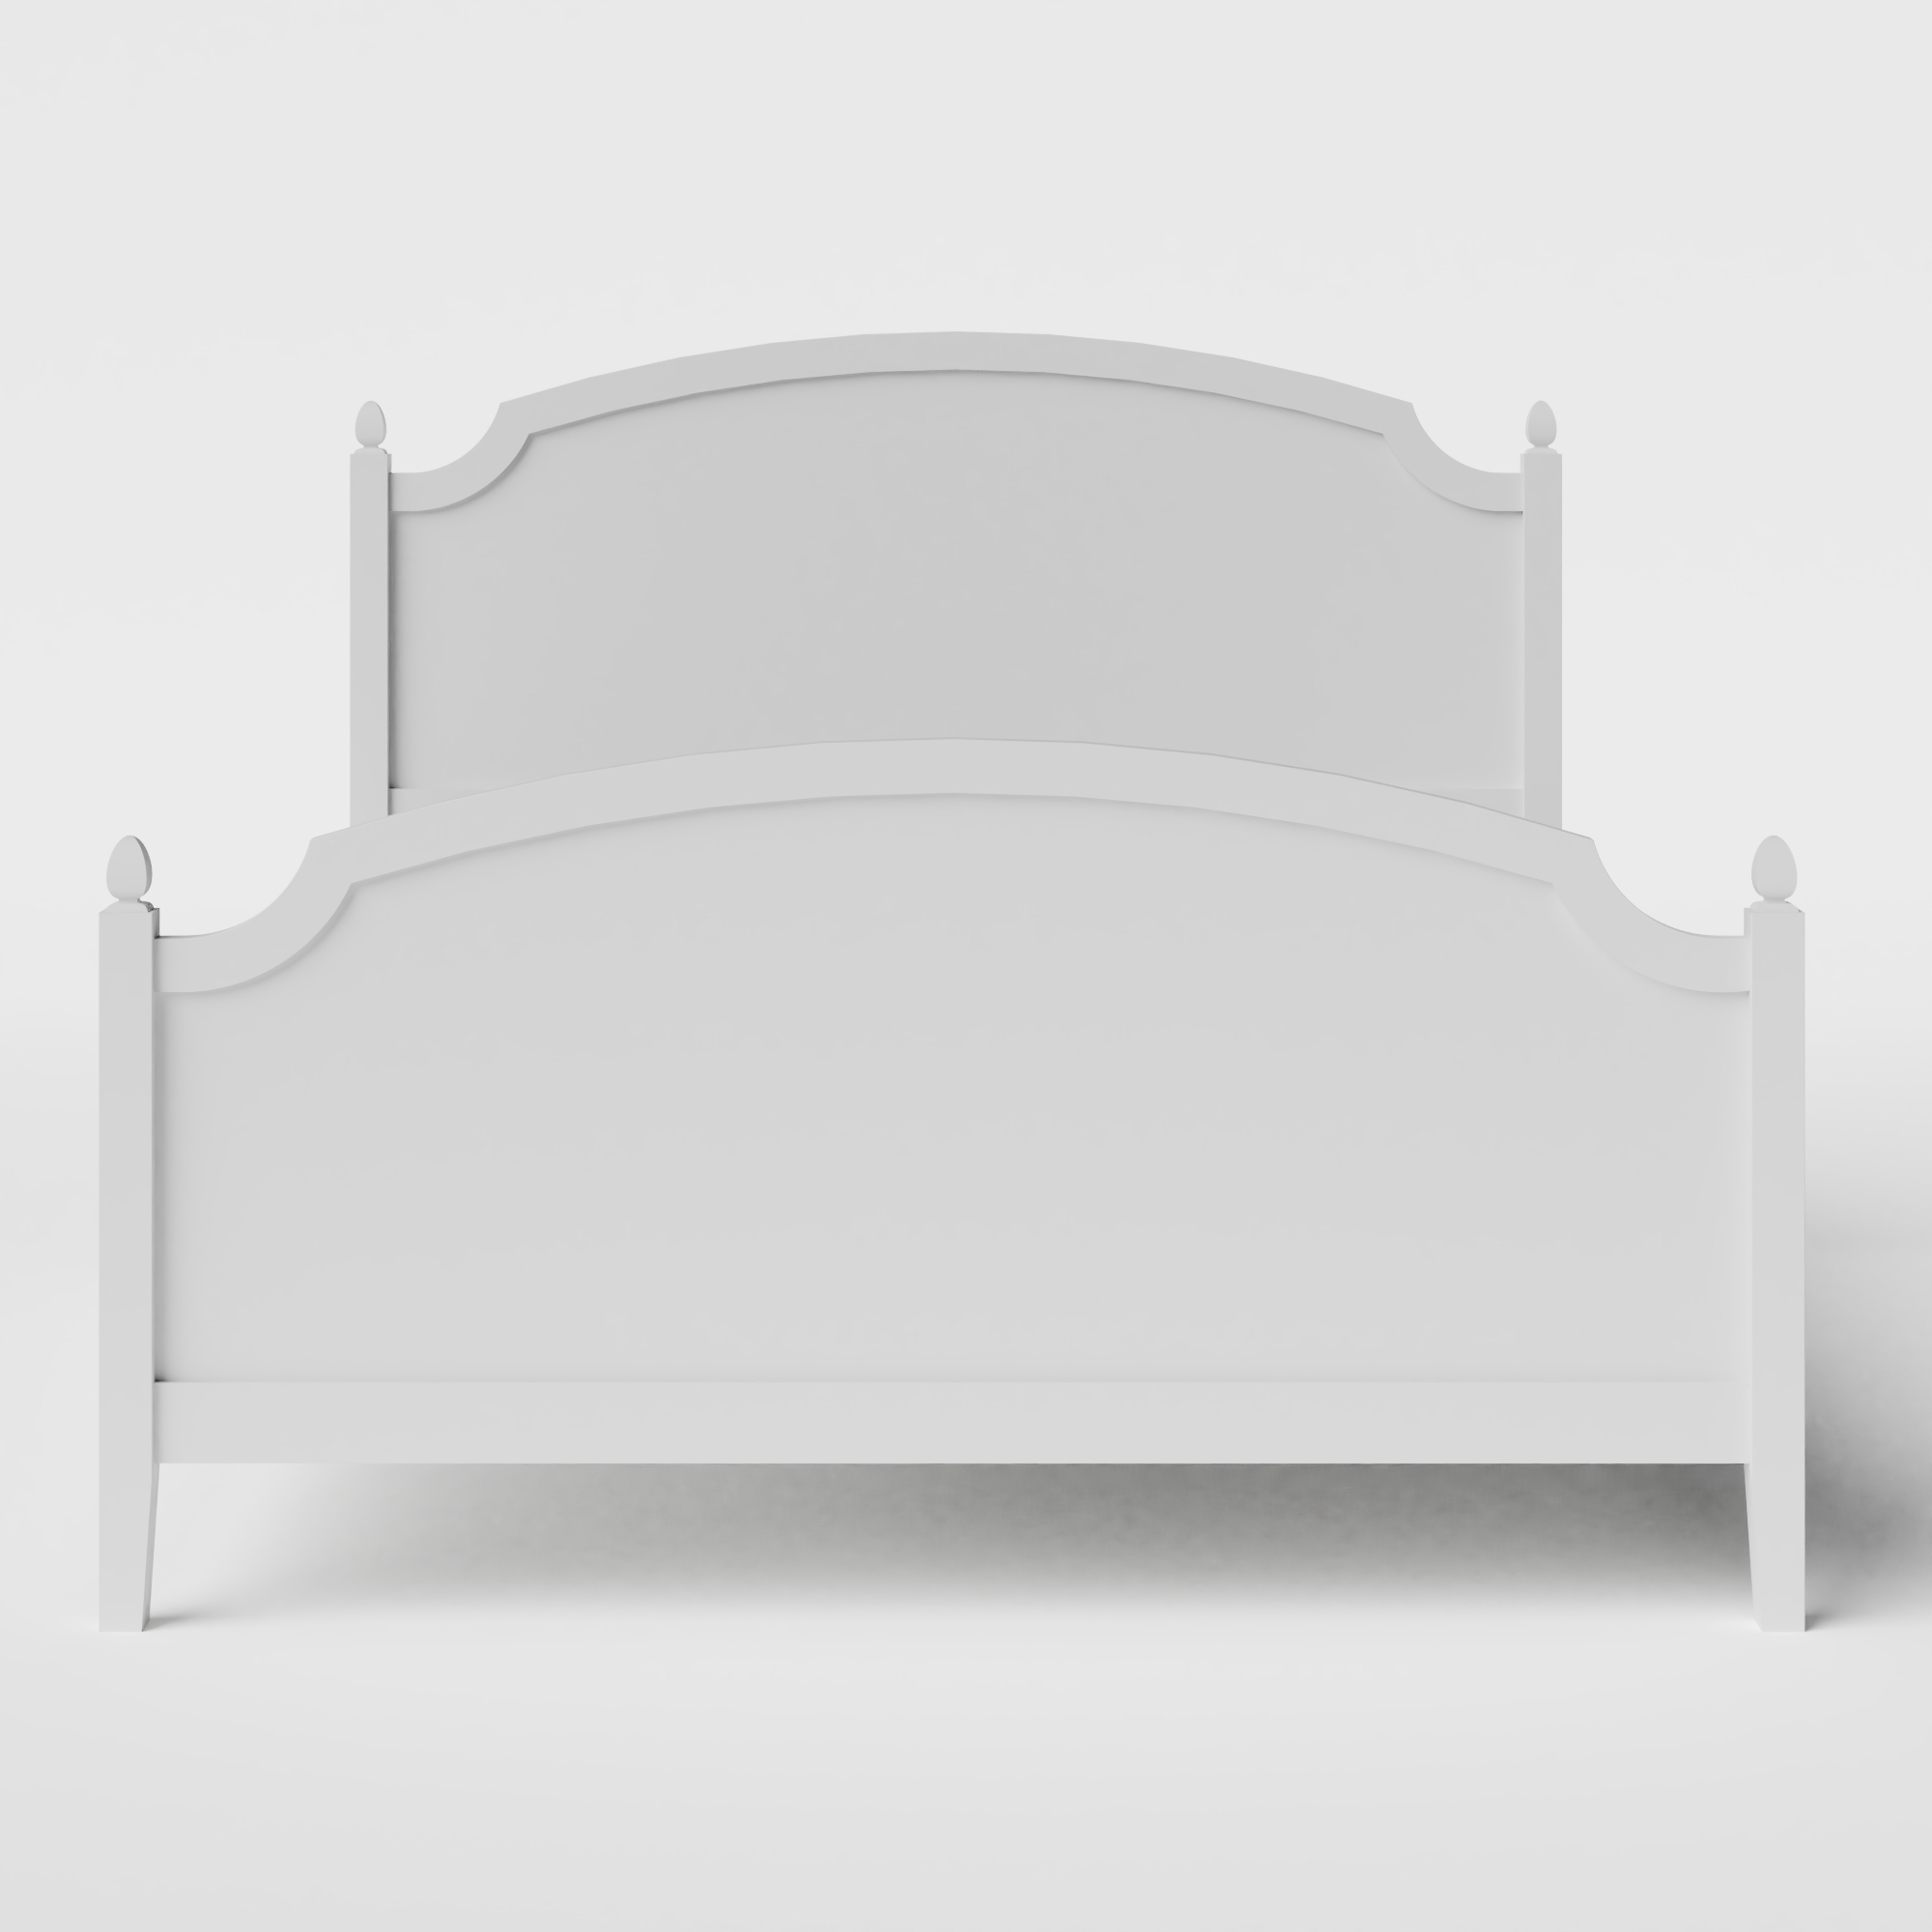 Kipling Painted houten bed in wit met matras